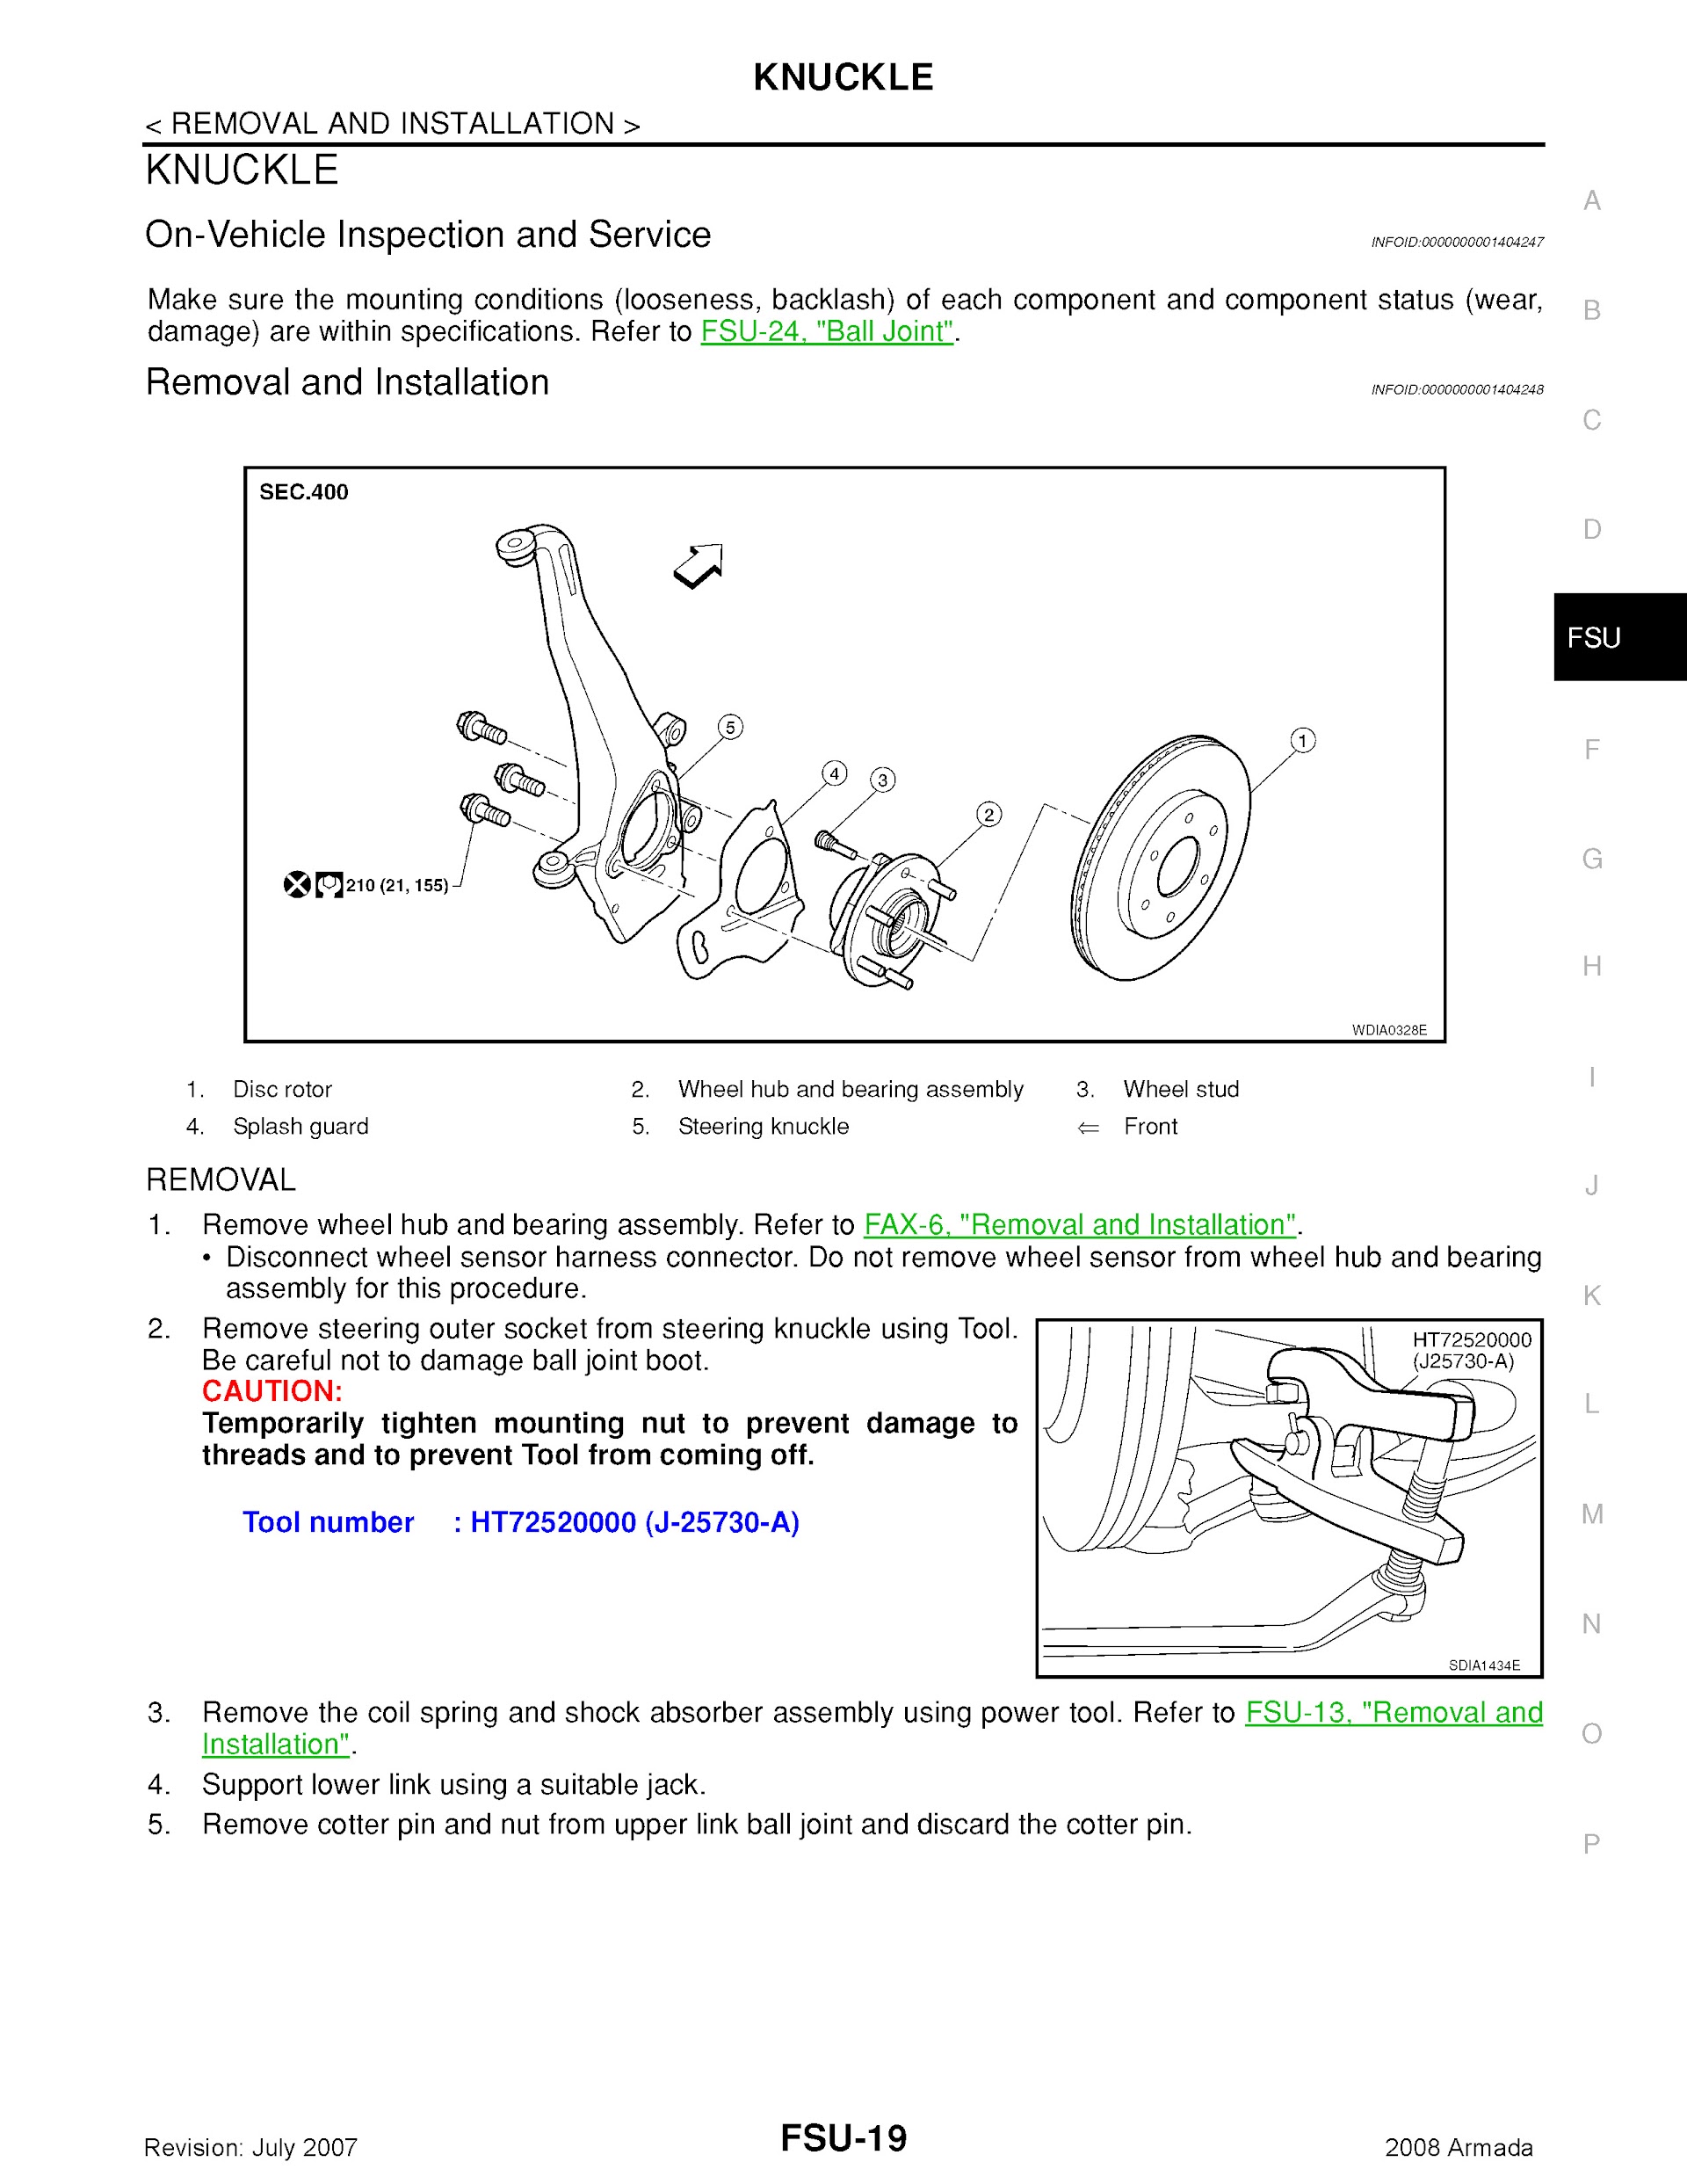 2008 Nissan Armada Repair Manual, Knuckle